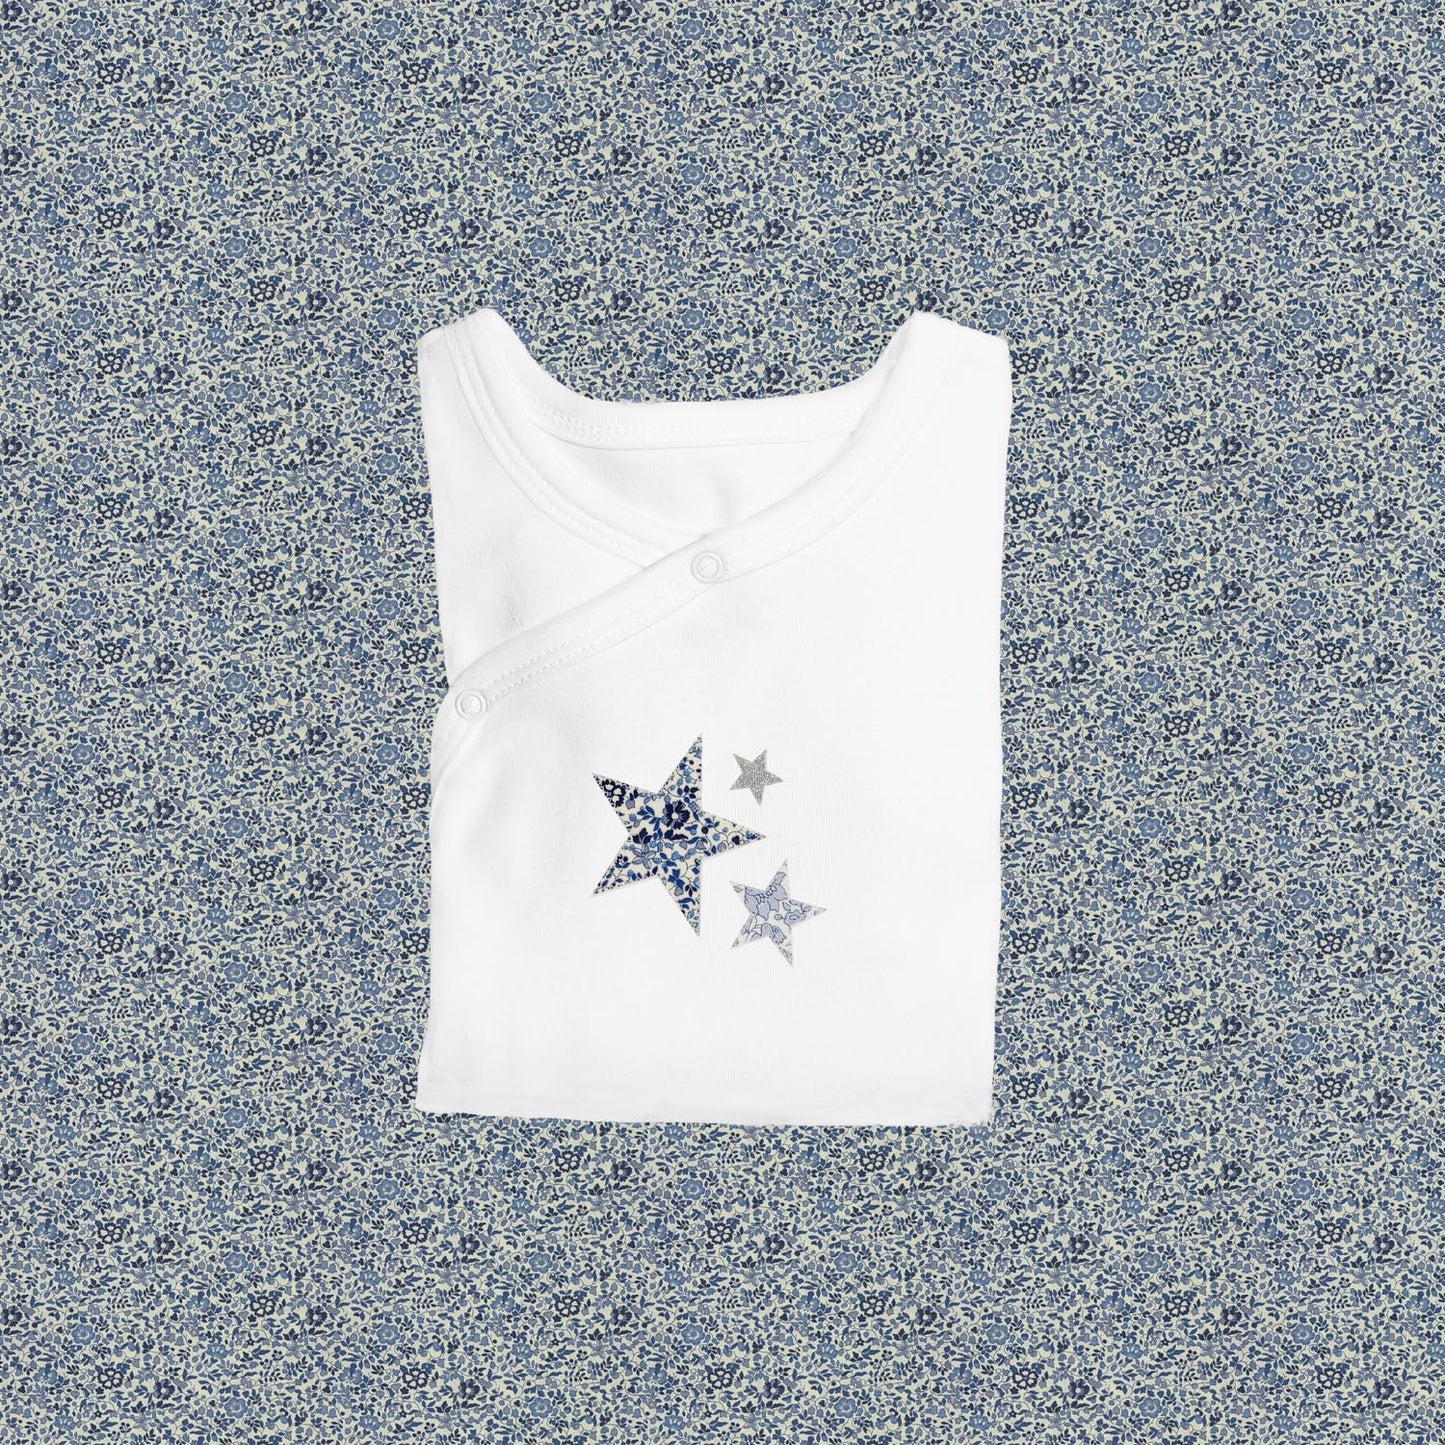 Sleepsuit - Stars Blue